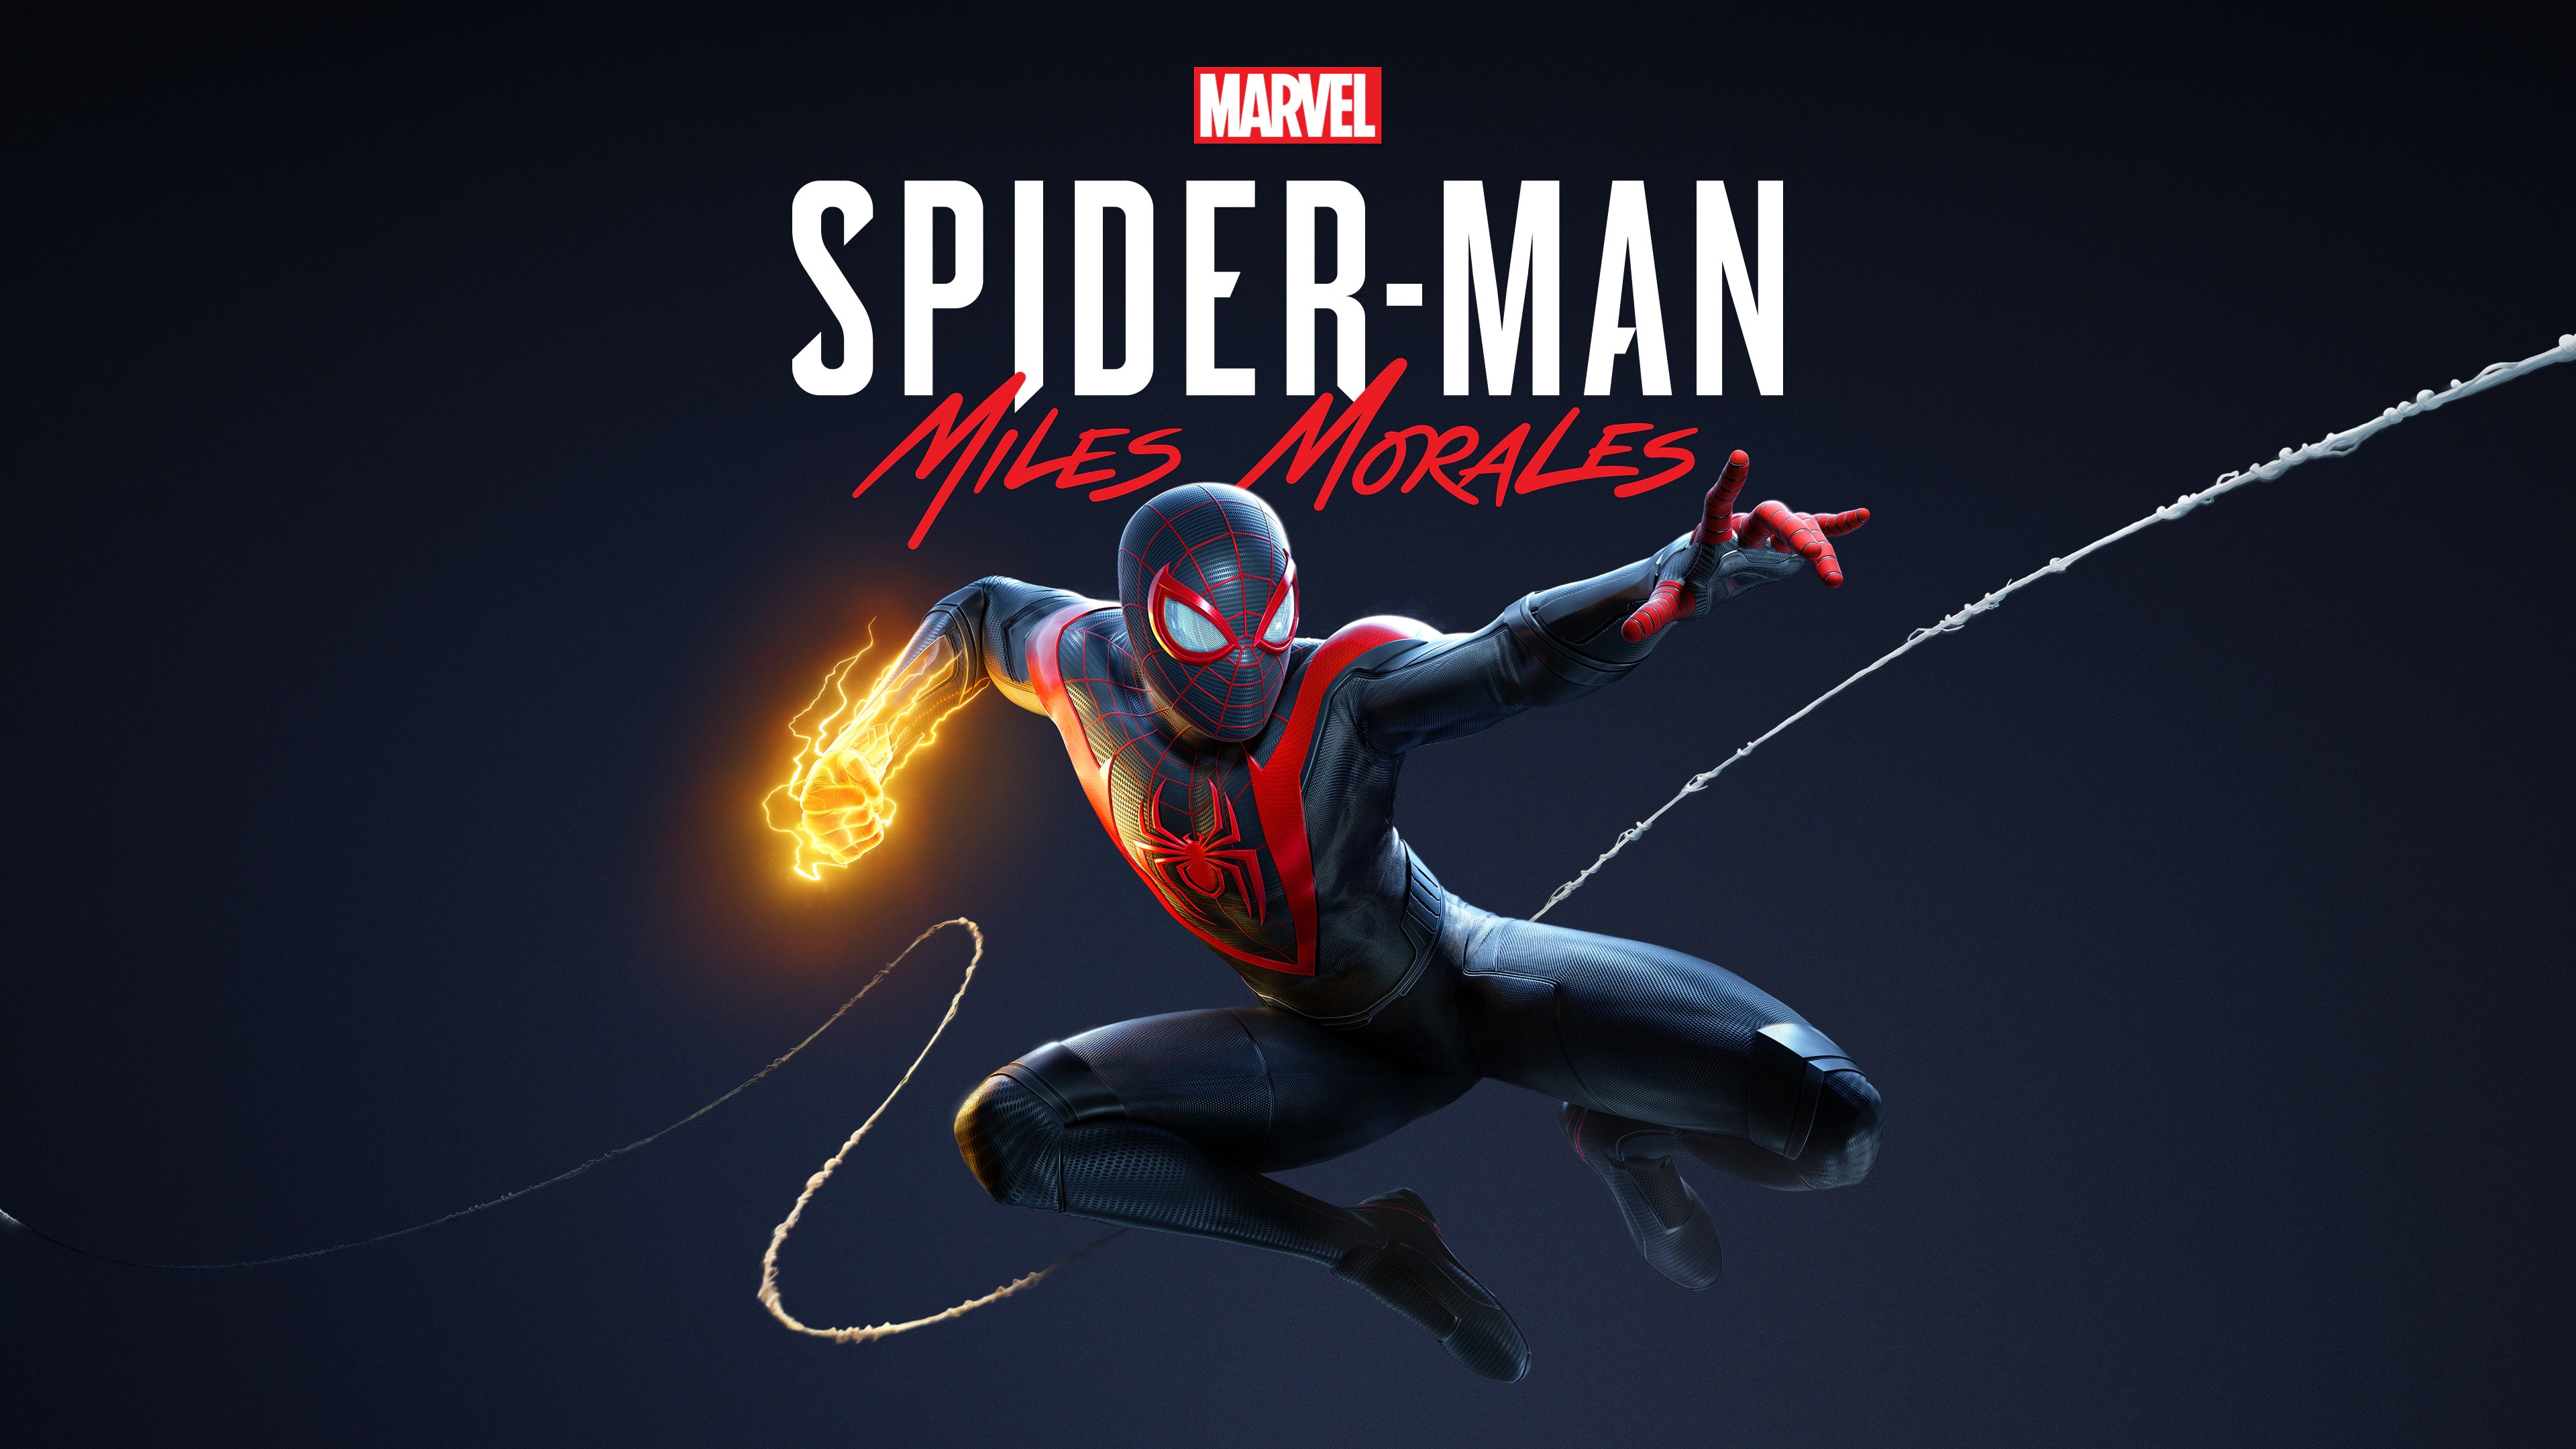 Marvel's Человек-паук /// Spider-Man: Miles Morales ( прохождение 15 )